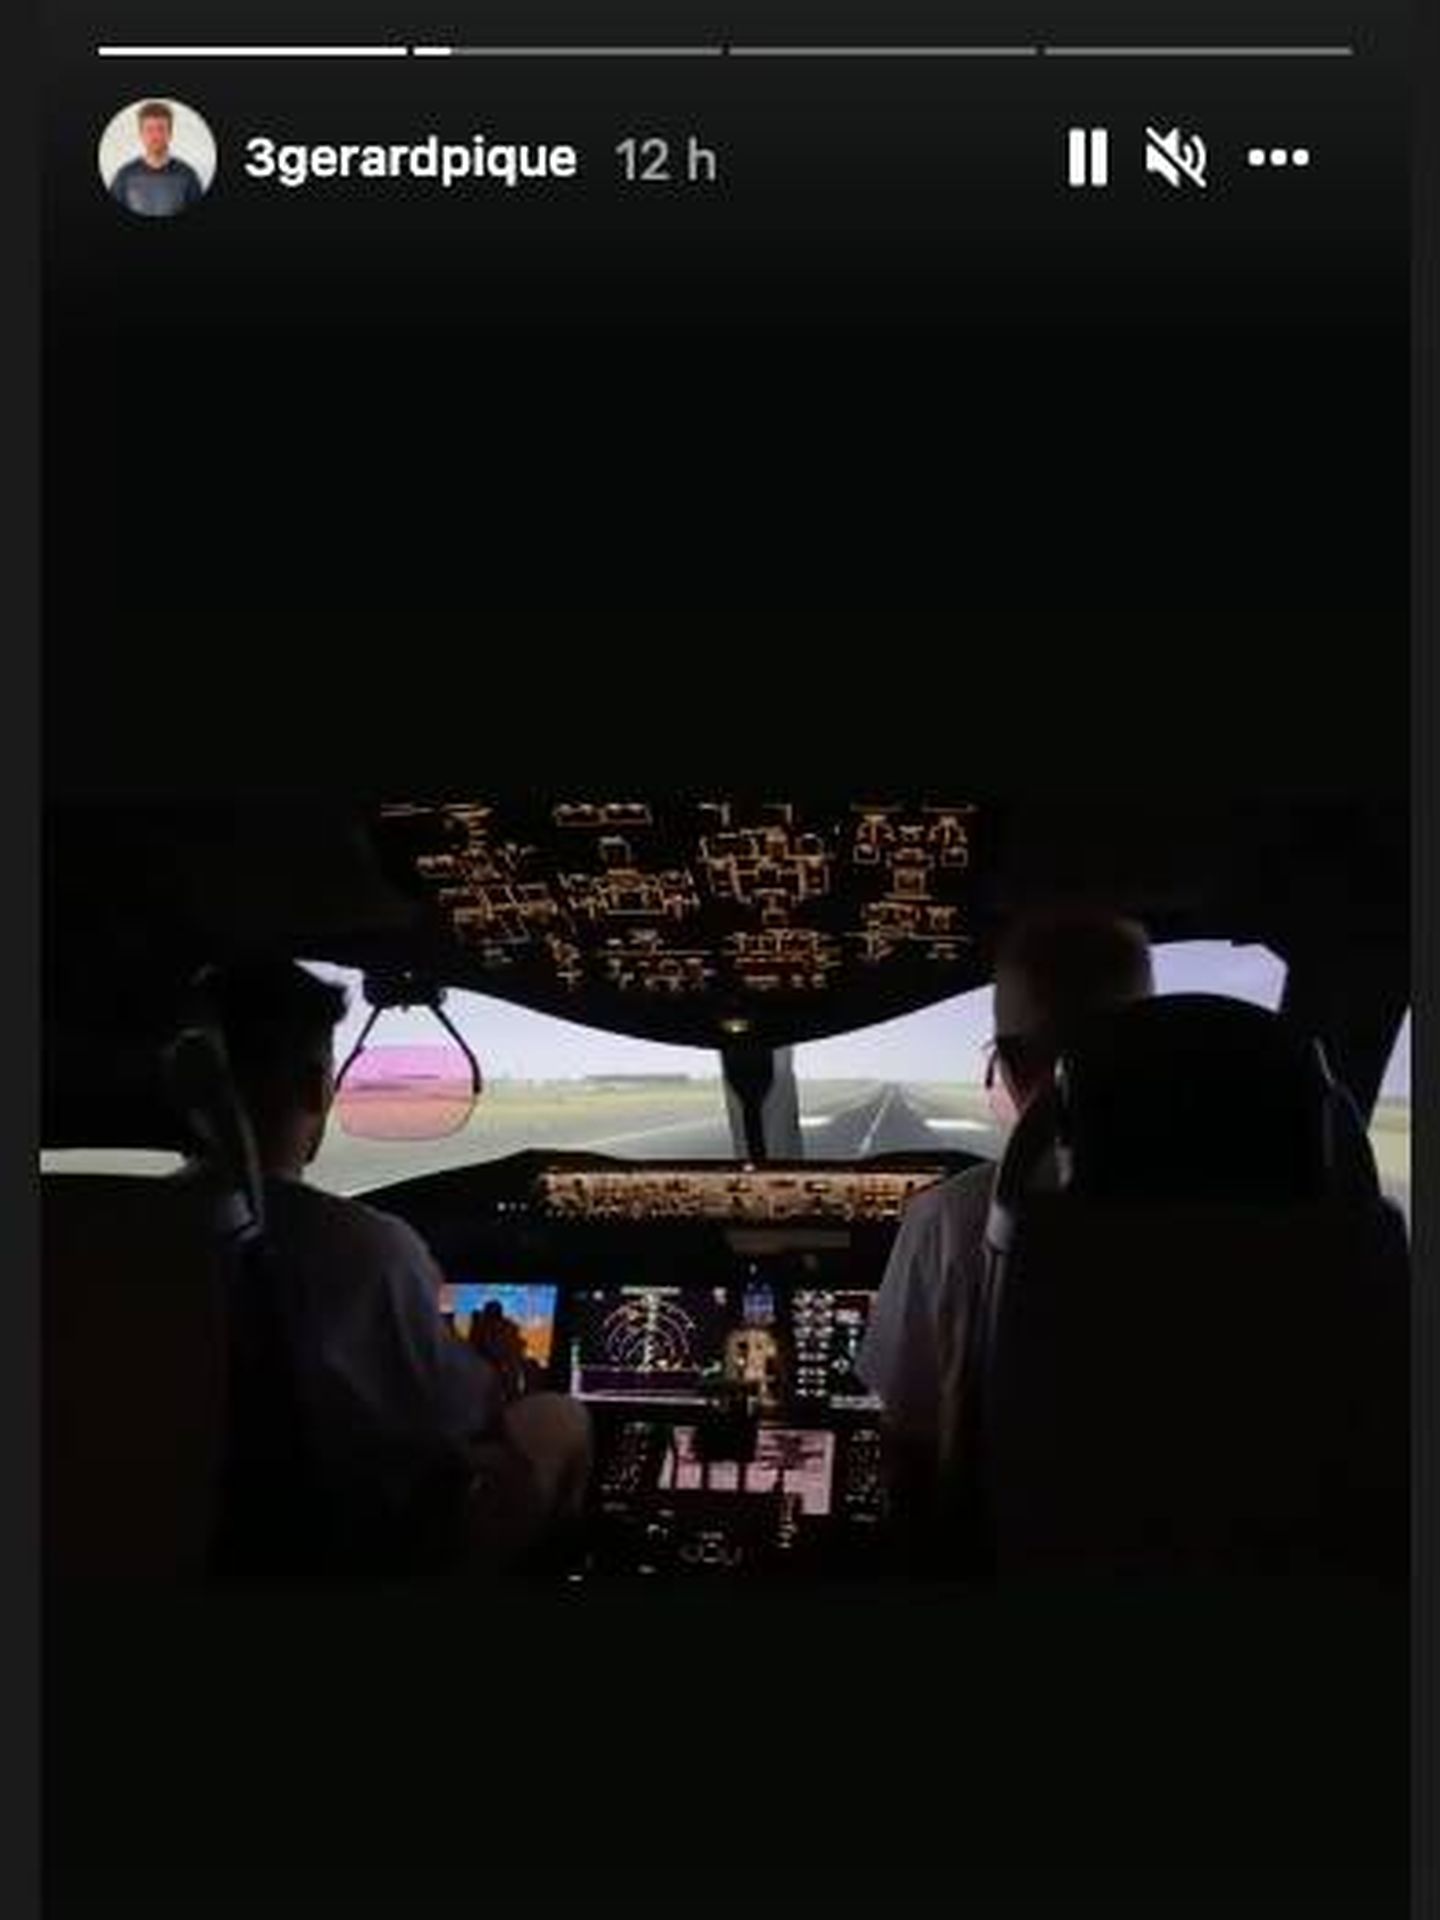 Gerard Piqué, piloto de avión. (Instagram @3gerardpique)